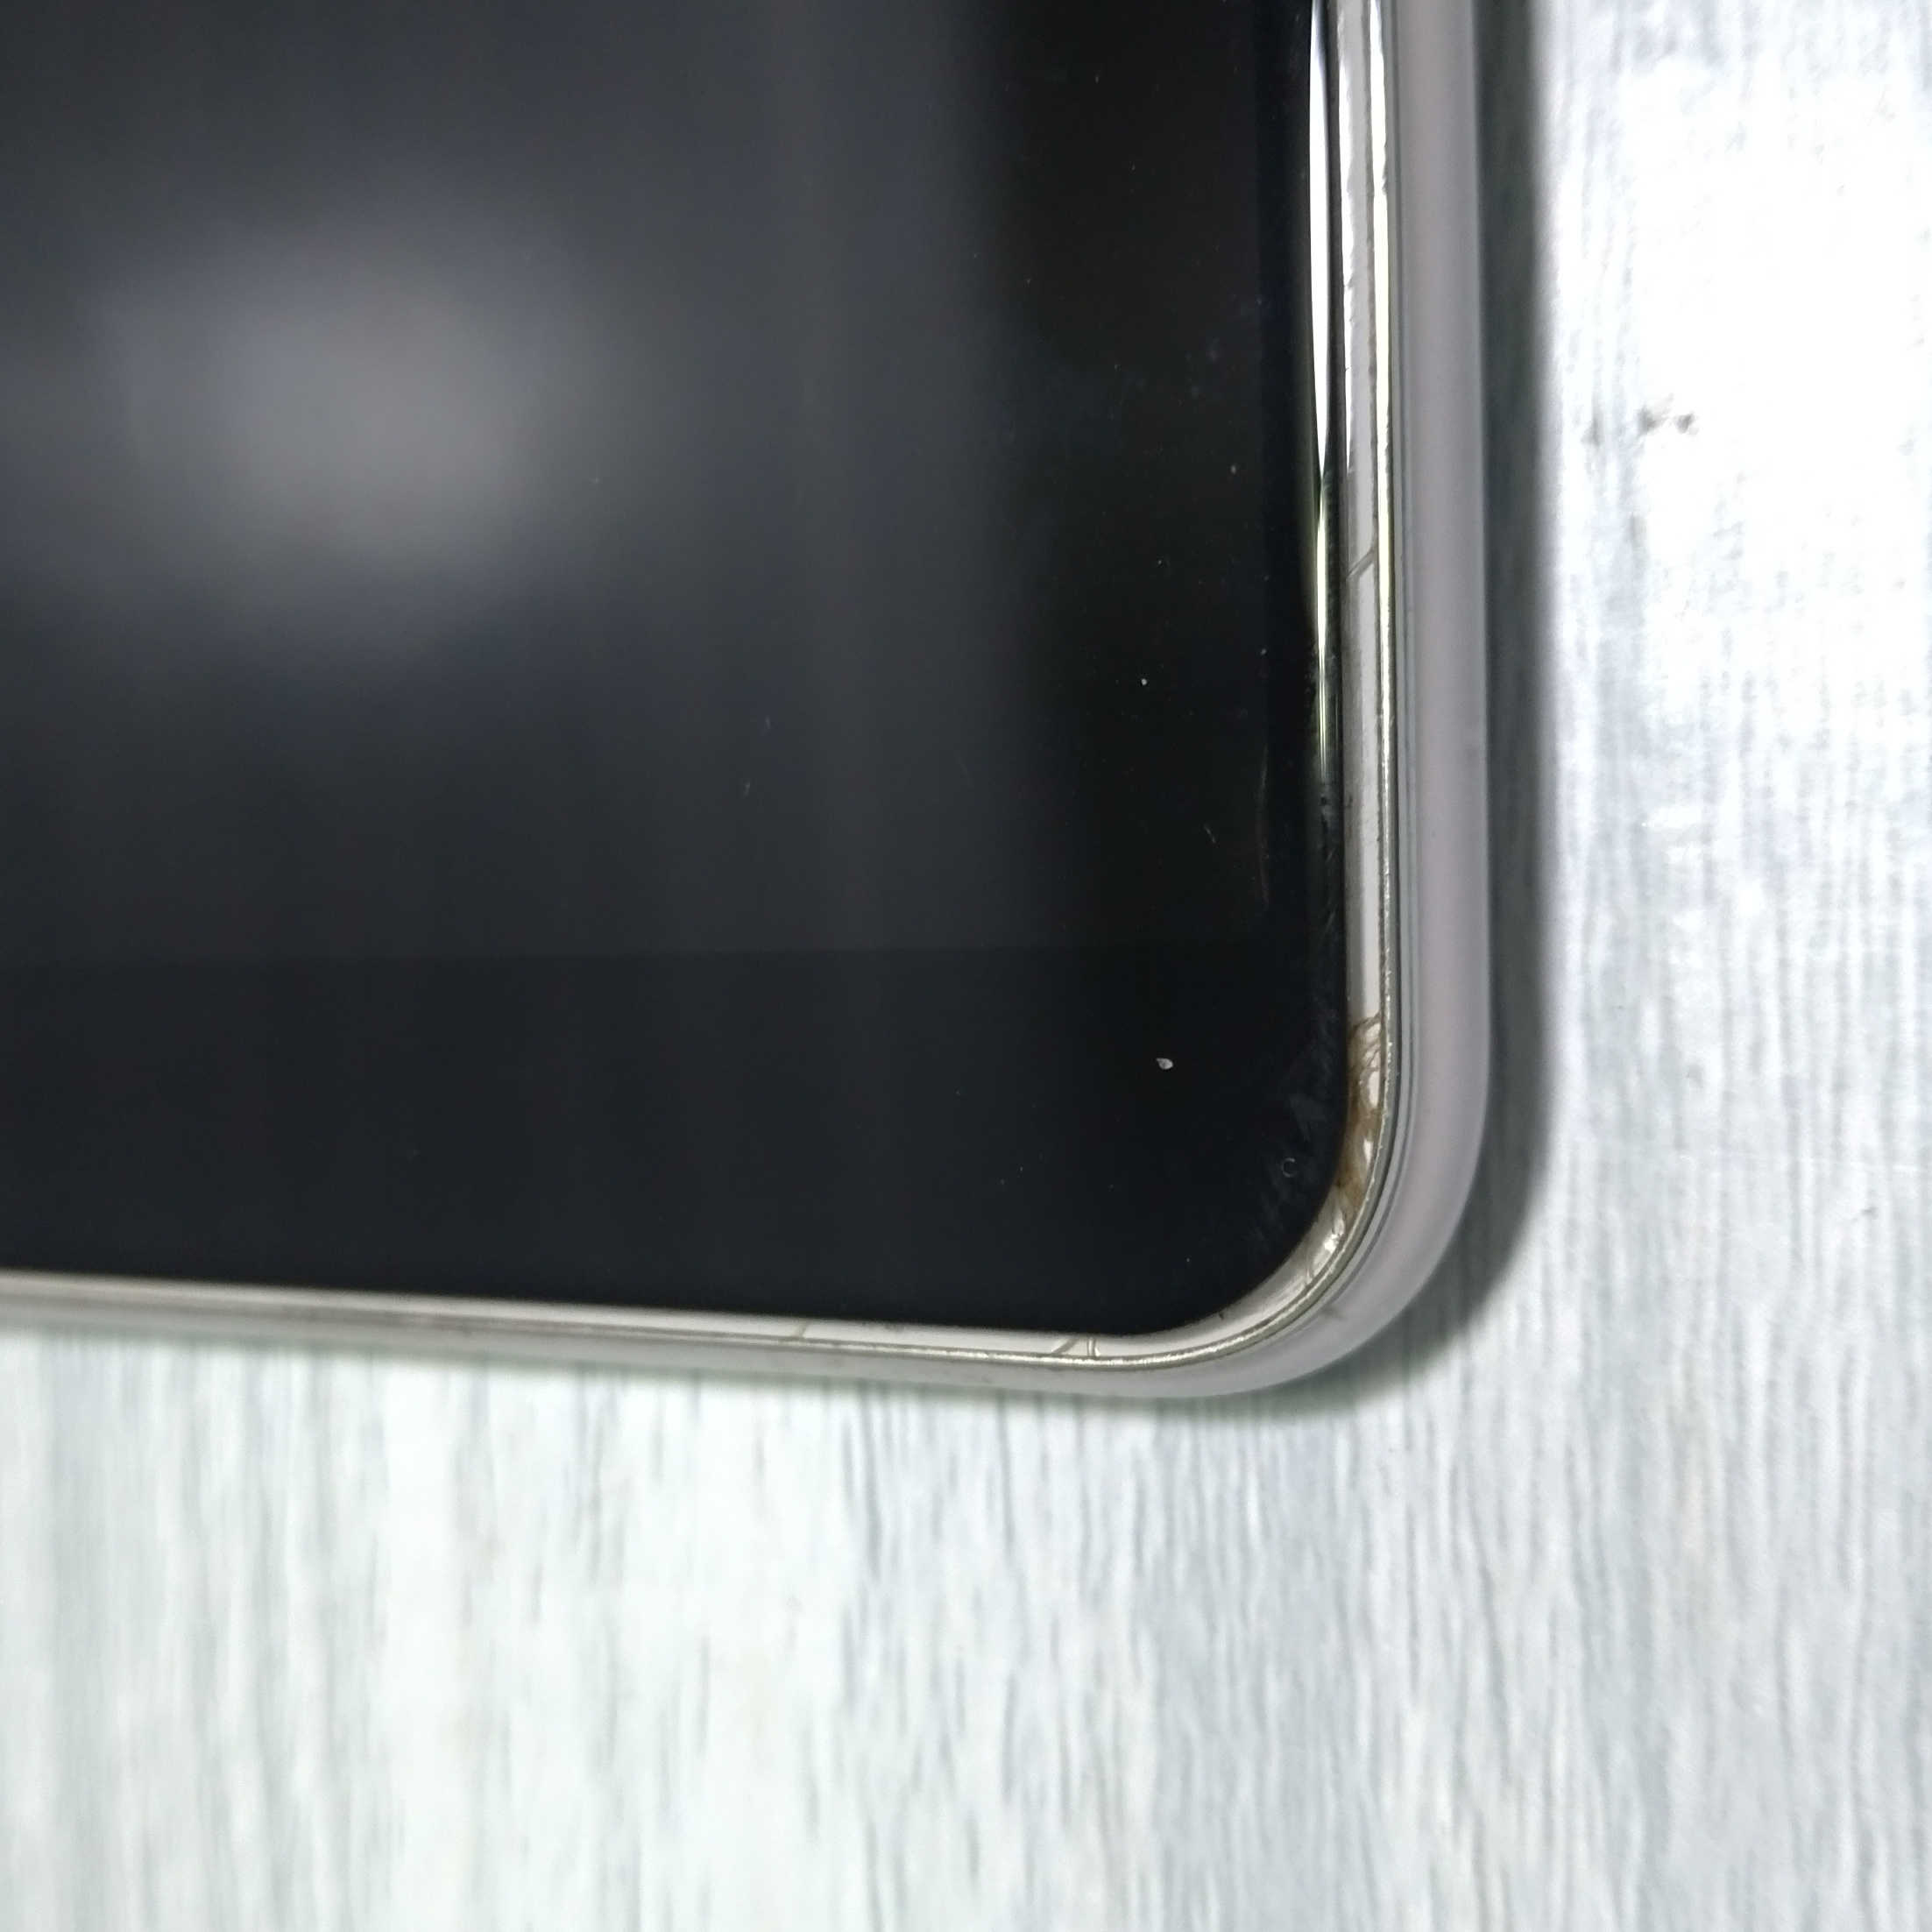 【現貨】ASUS ZenFone 5Q ZC600KL 白色 6吋 可臉部解鎖 雙卡雙待(二手機)(備用機)